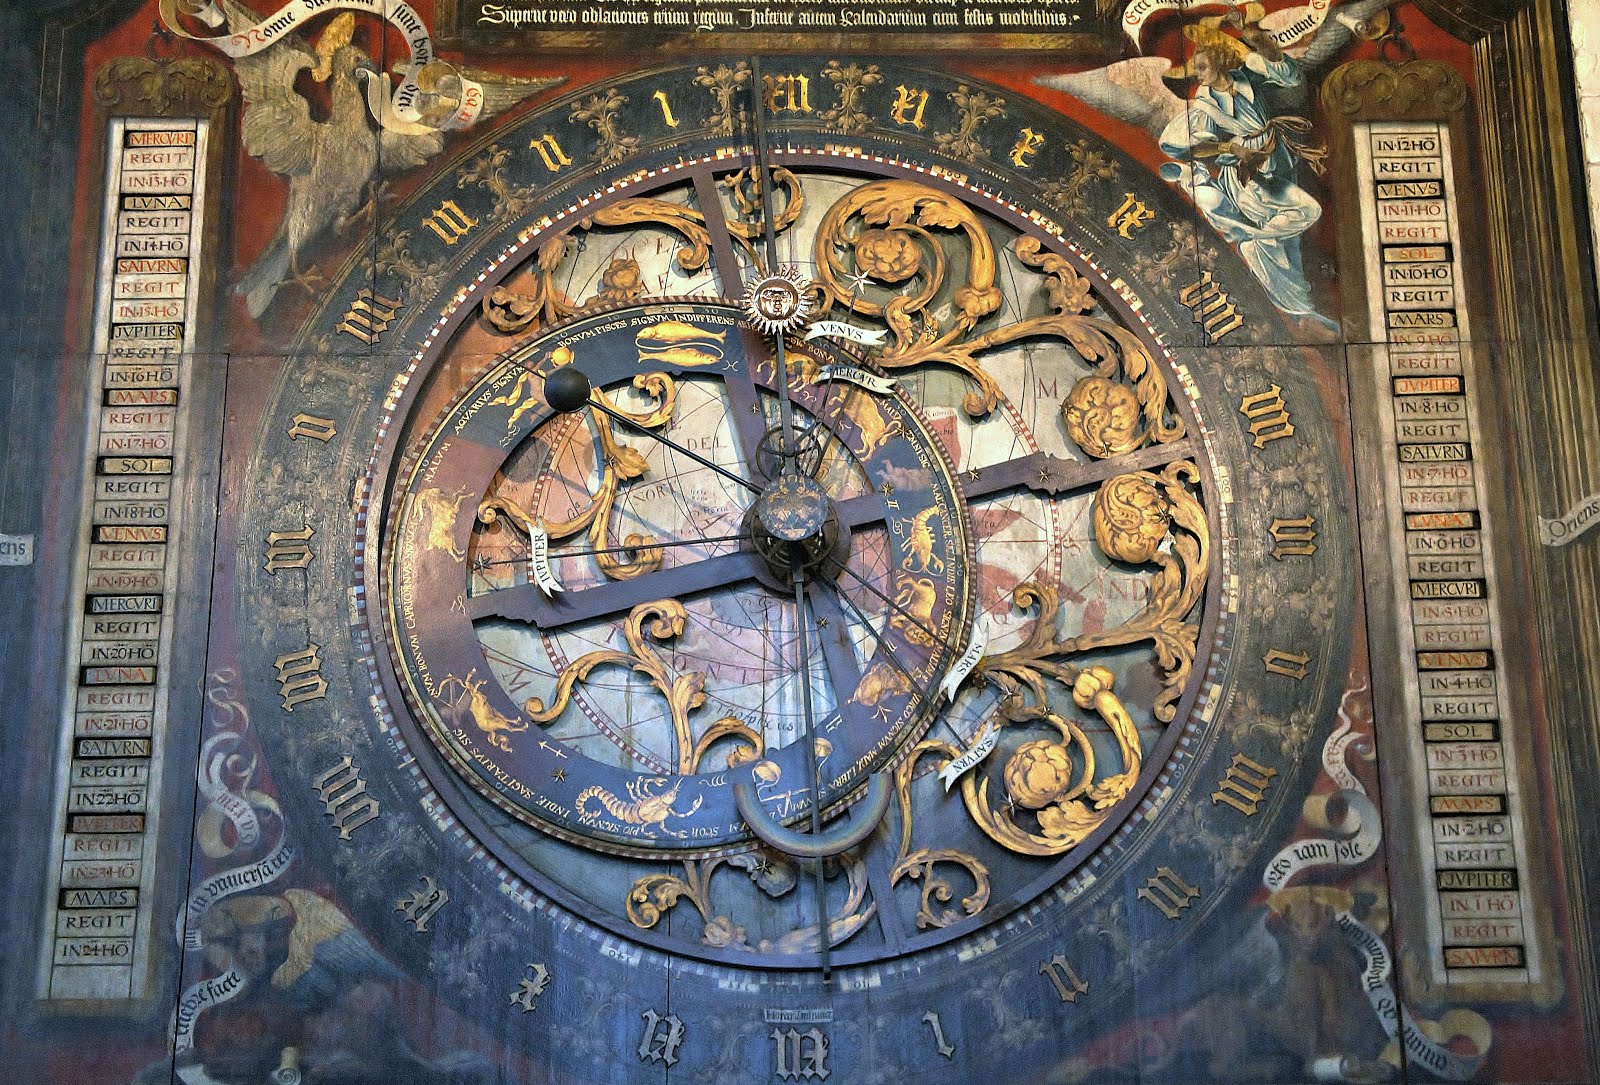 塔時計と天文時計 ミュンスター大聖堂の天文時計 ミュンスター